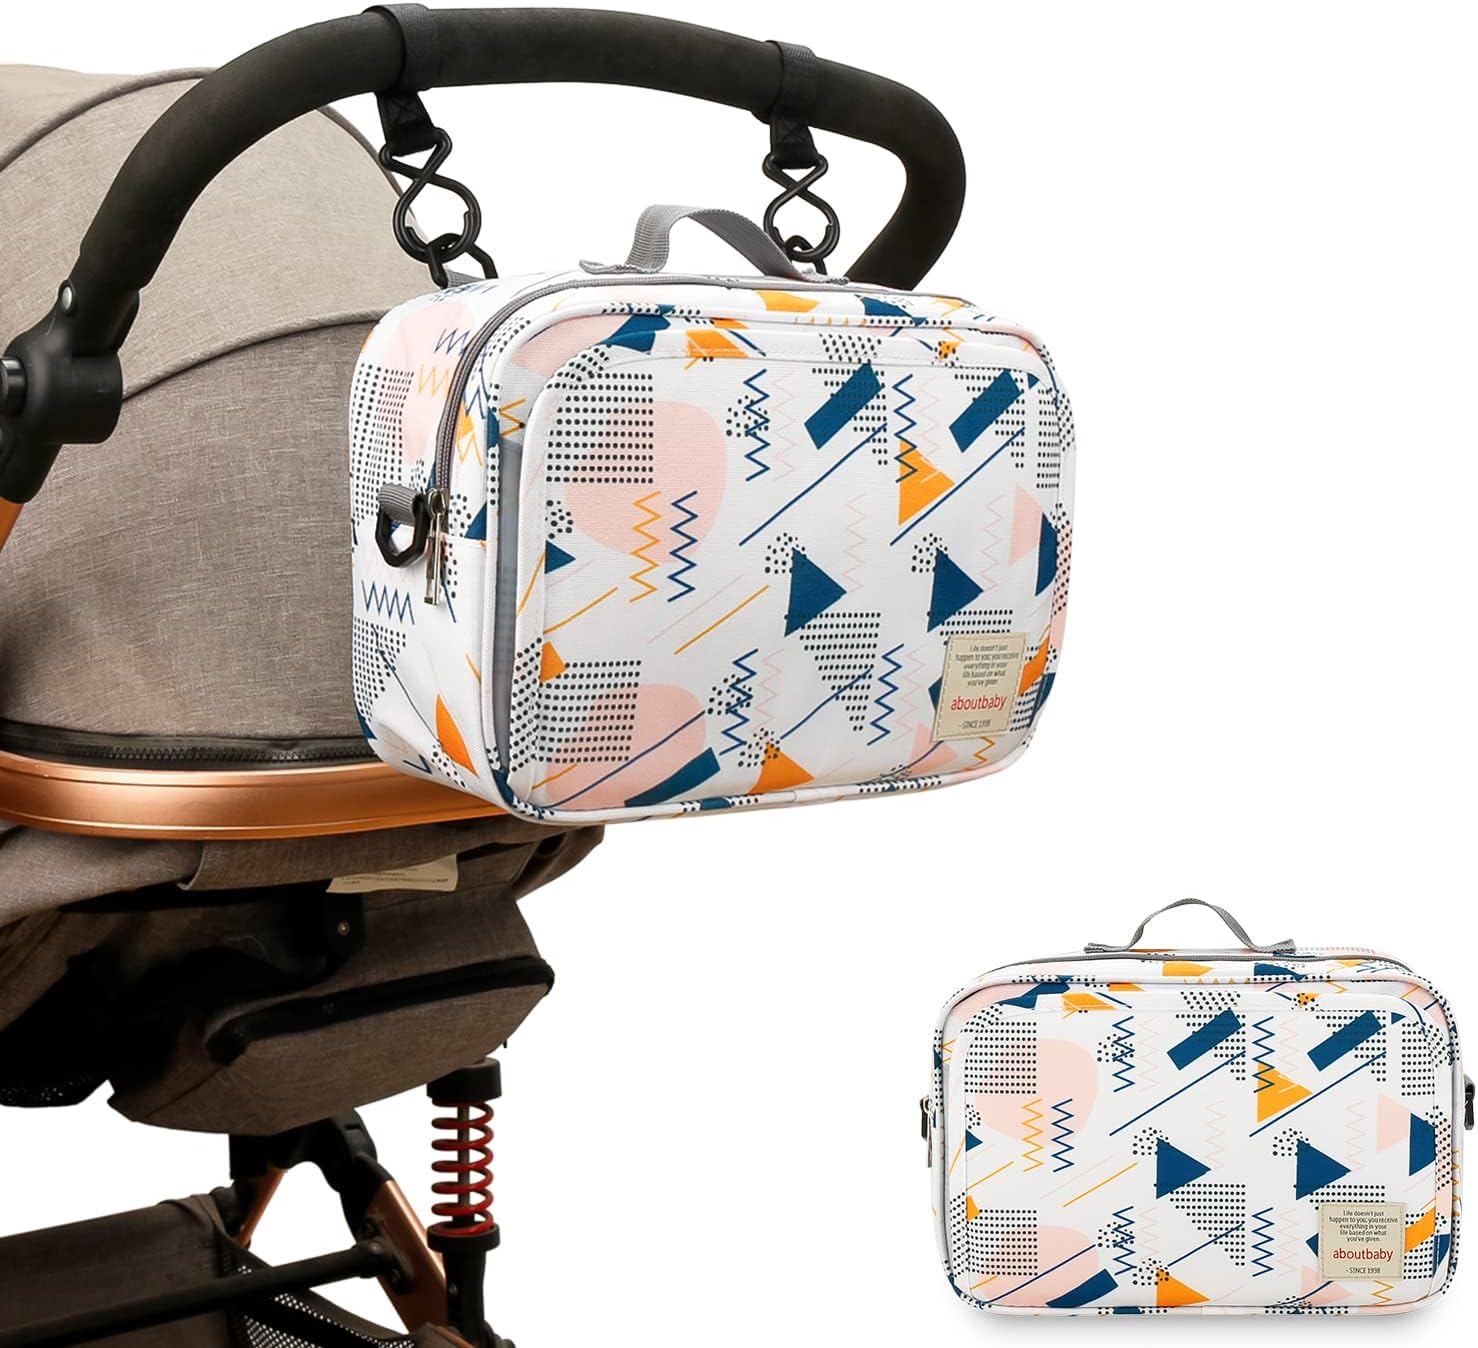 حقيبة عربة الاطفال - حقيبة حفاضات الاطفال لعربة الاطفال لحفظ للحفاضات والمناديل المبللة والالعاب